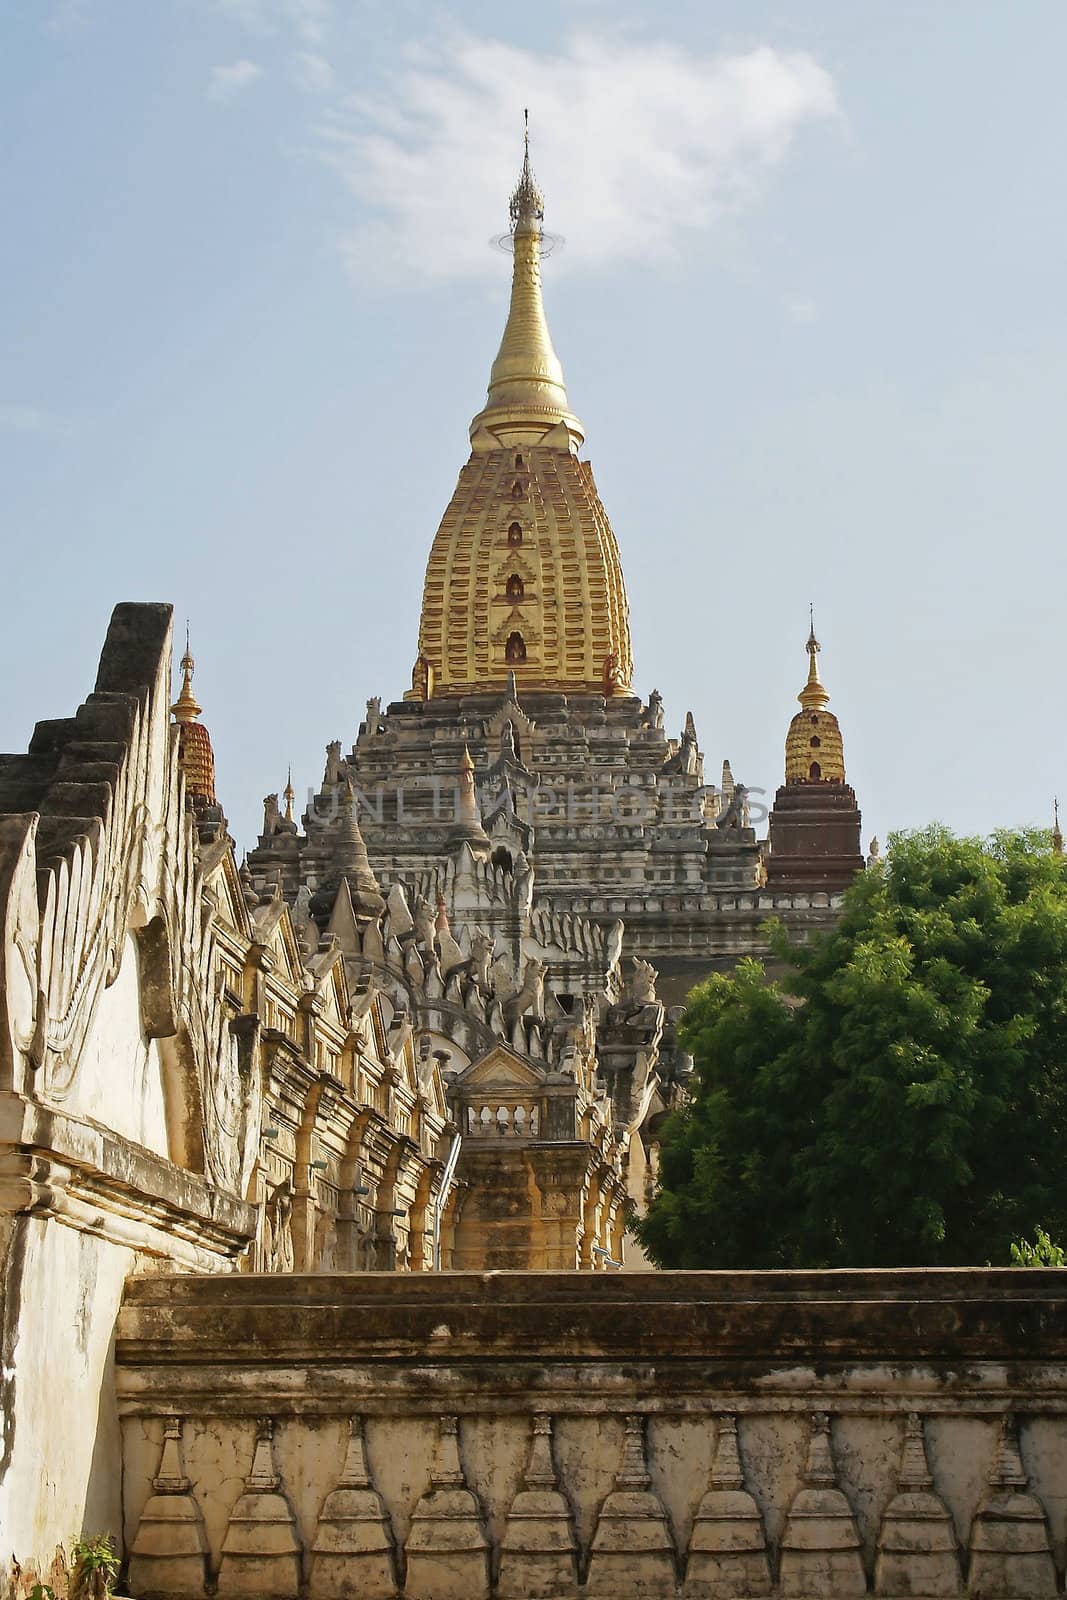 Ananda Temple, Bagan, Myanmar, Asia